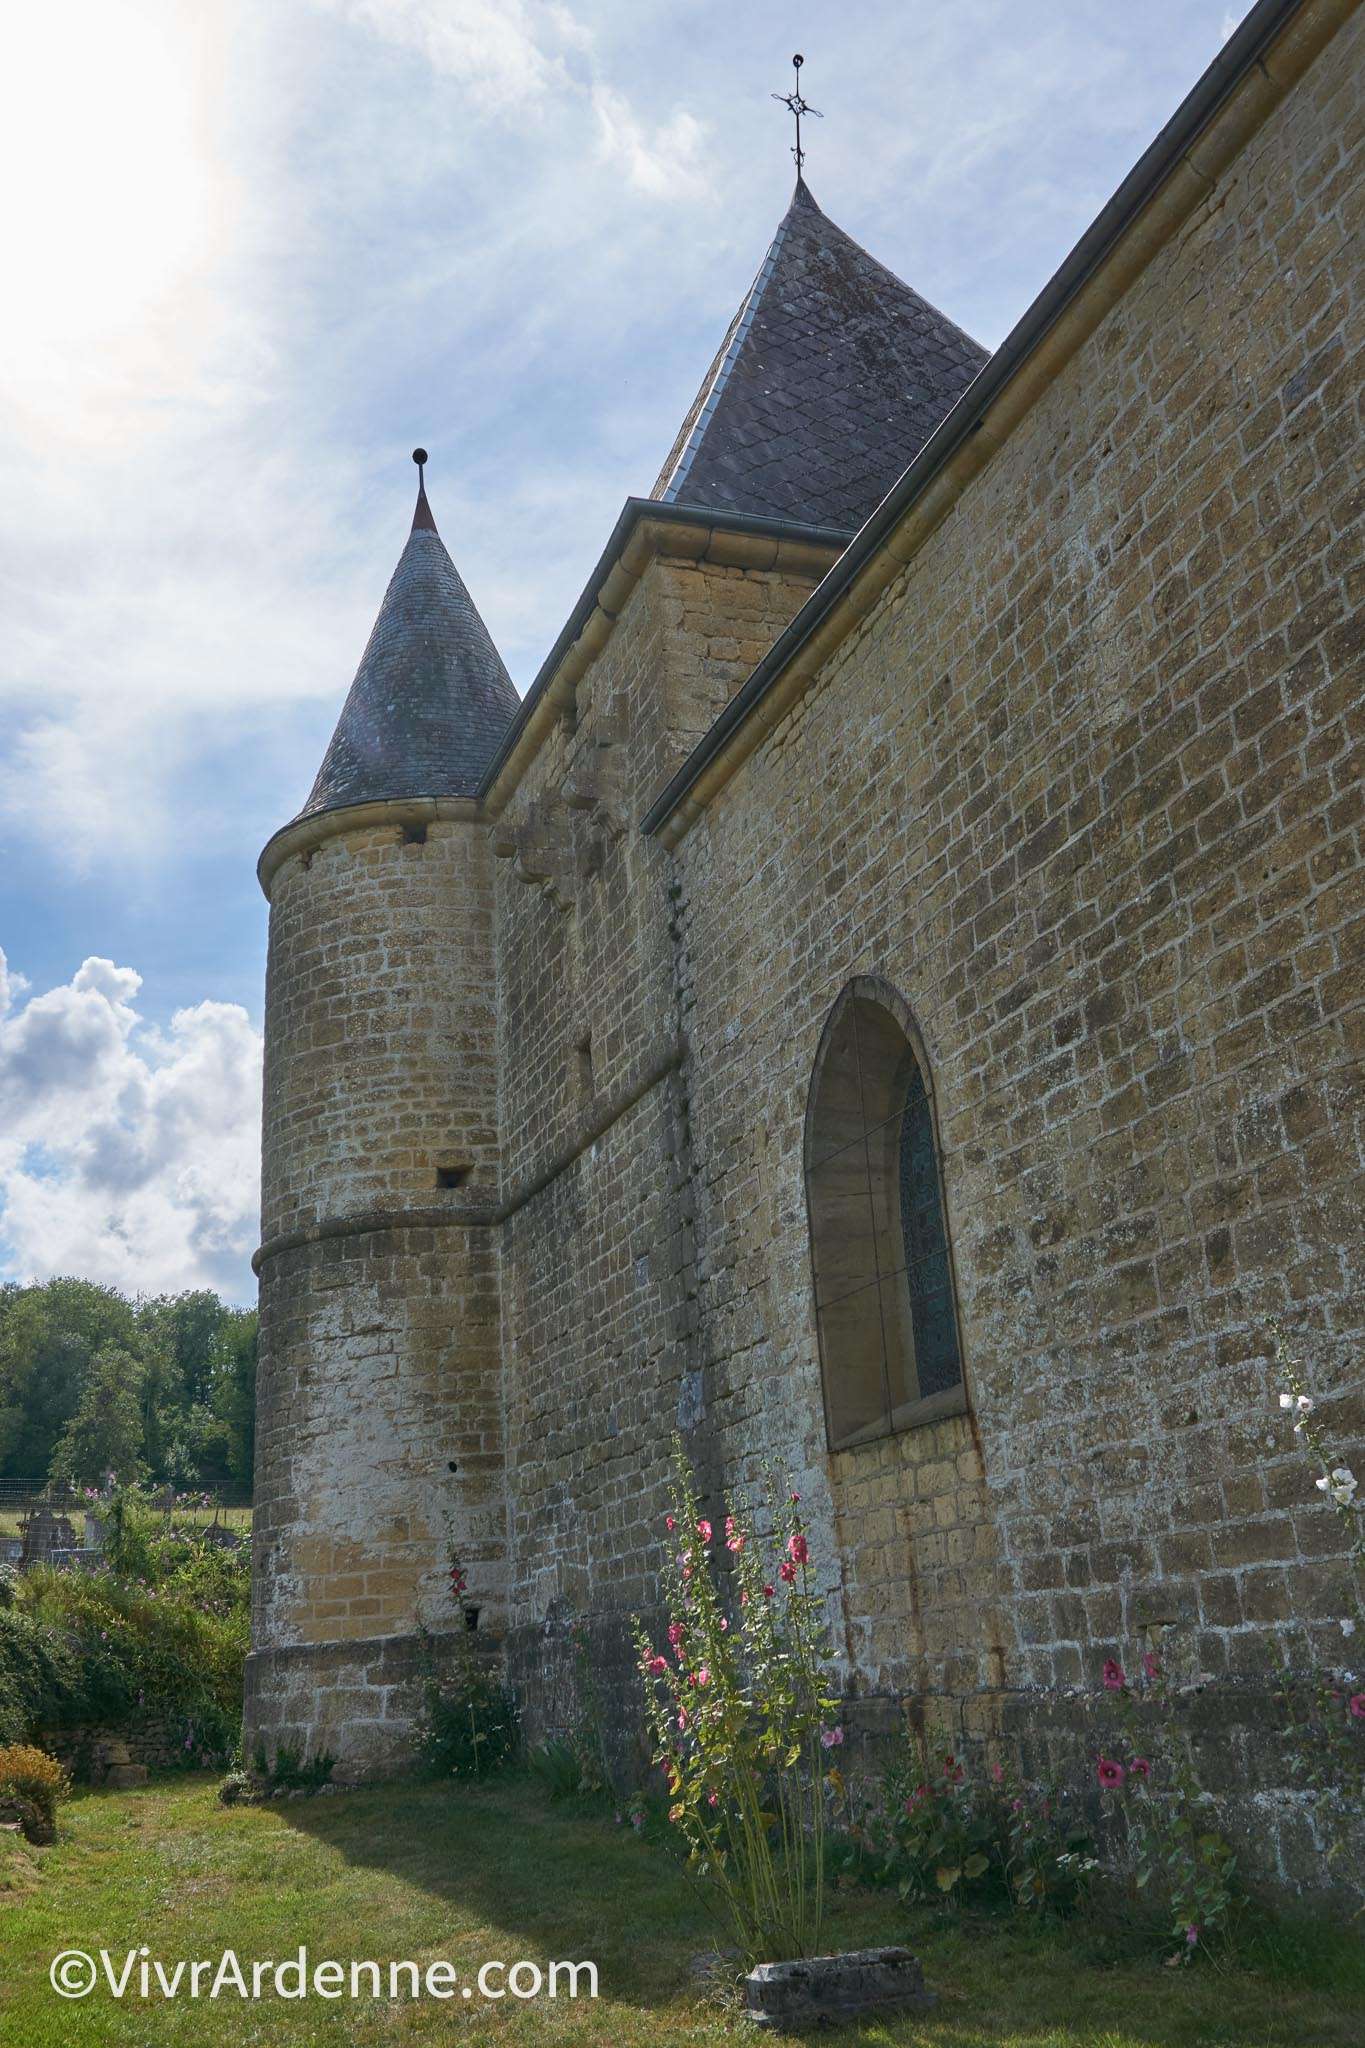 VivrArdenne - Eglises fortifiées de Thiérache